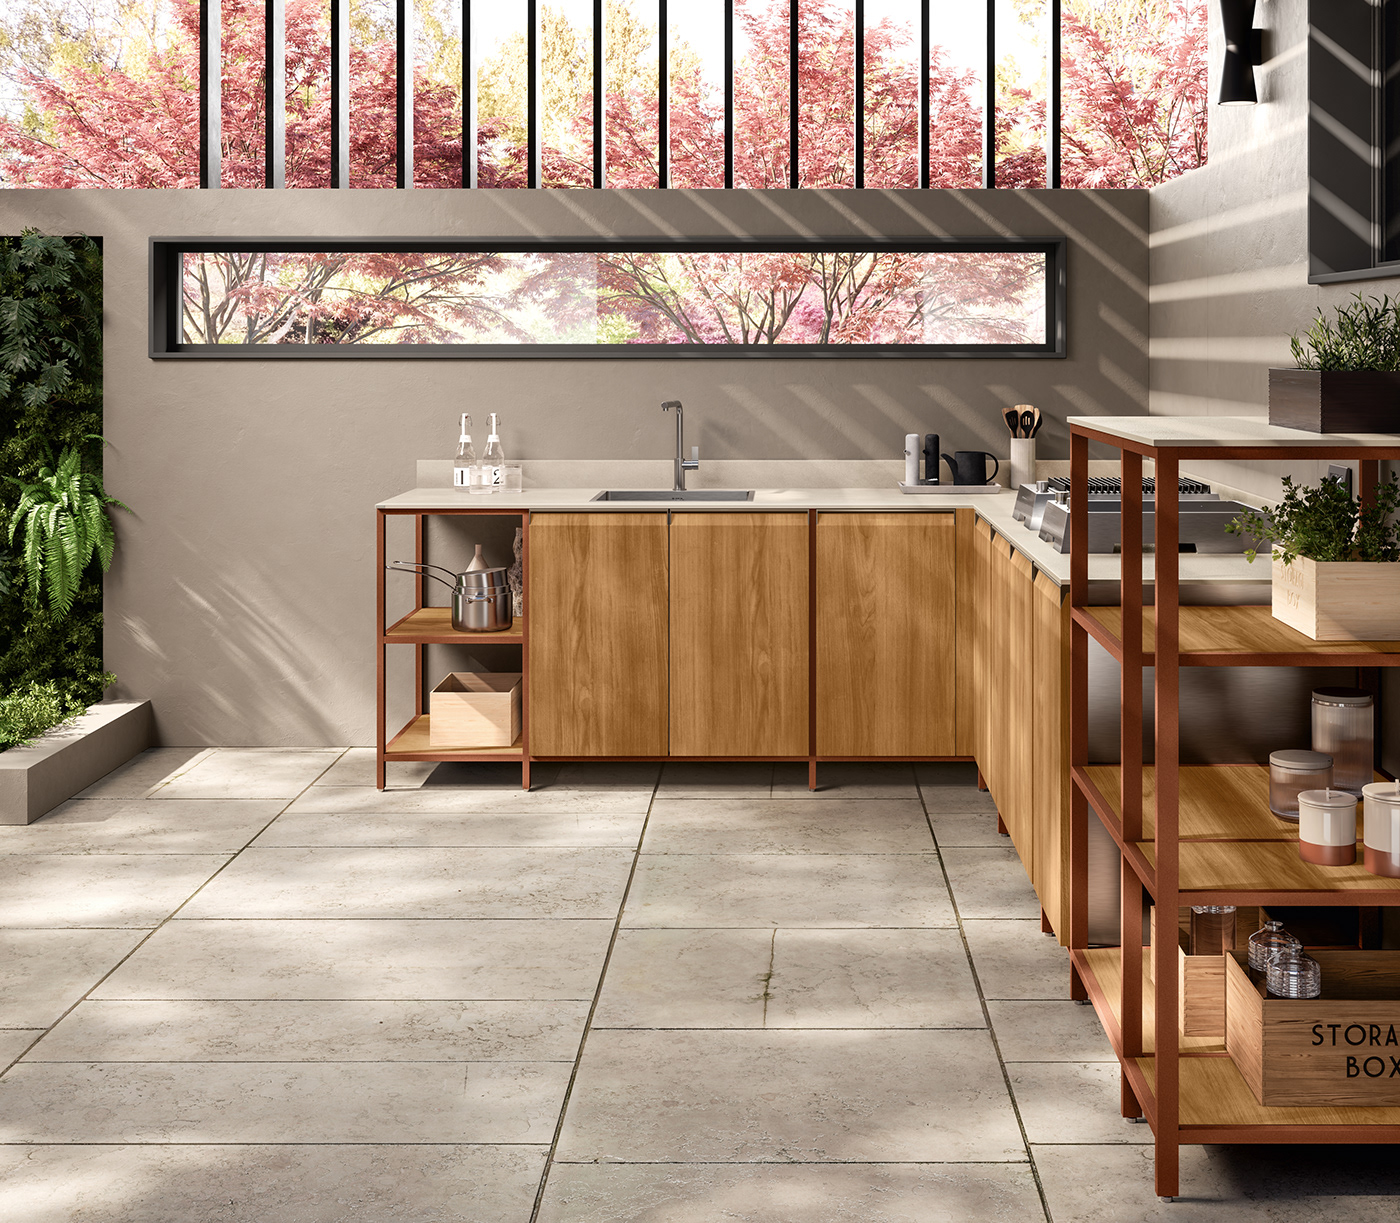 3D CGI design exterior interior design  kitchen new Render visualization